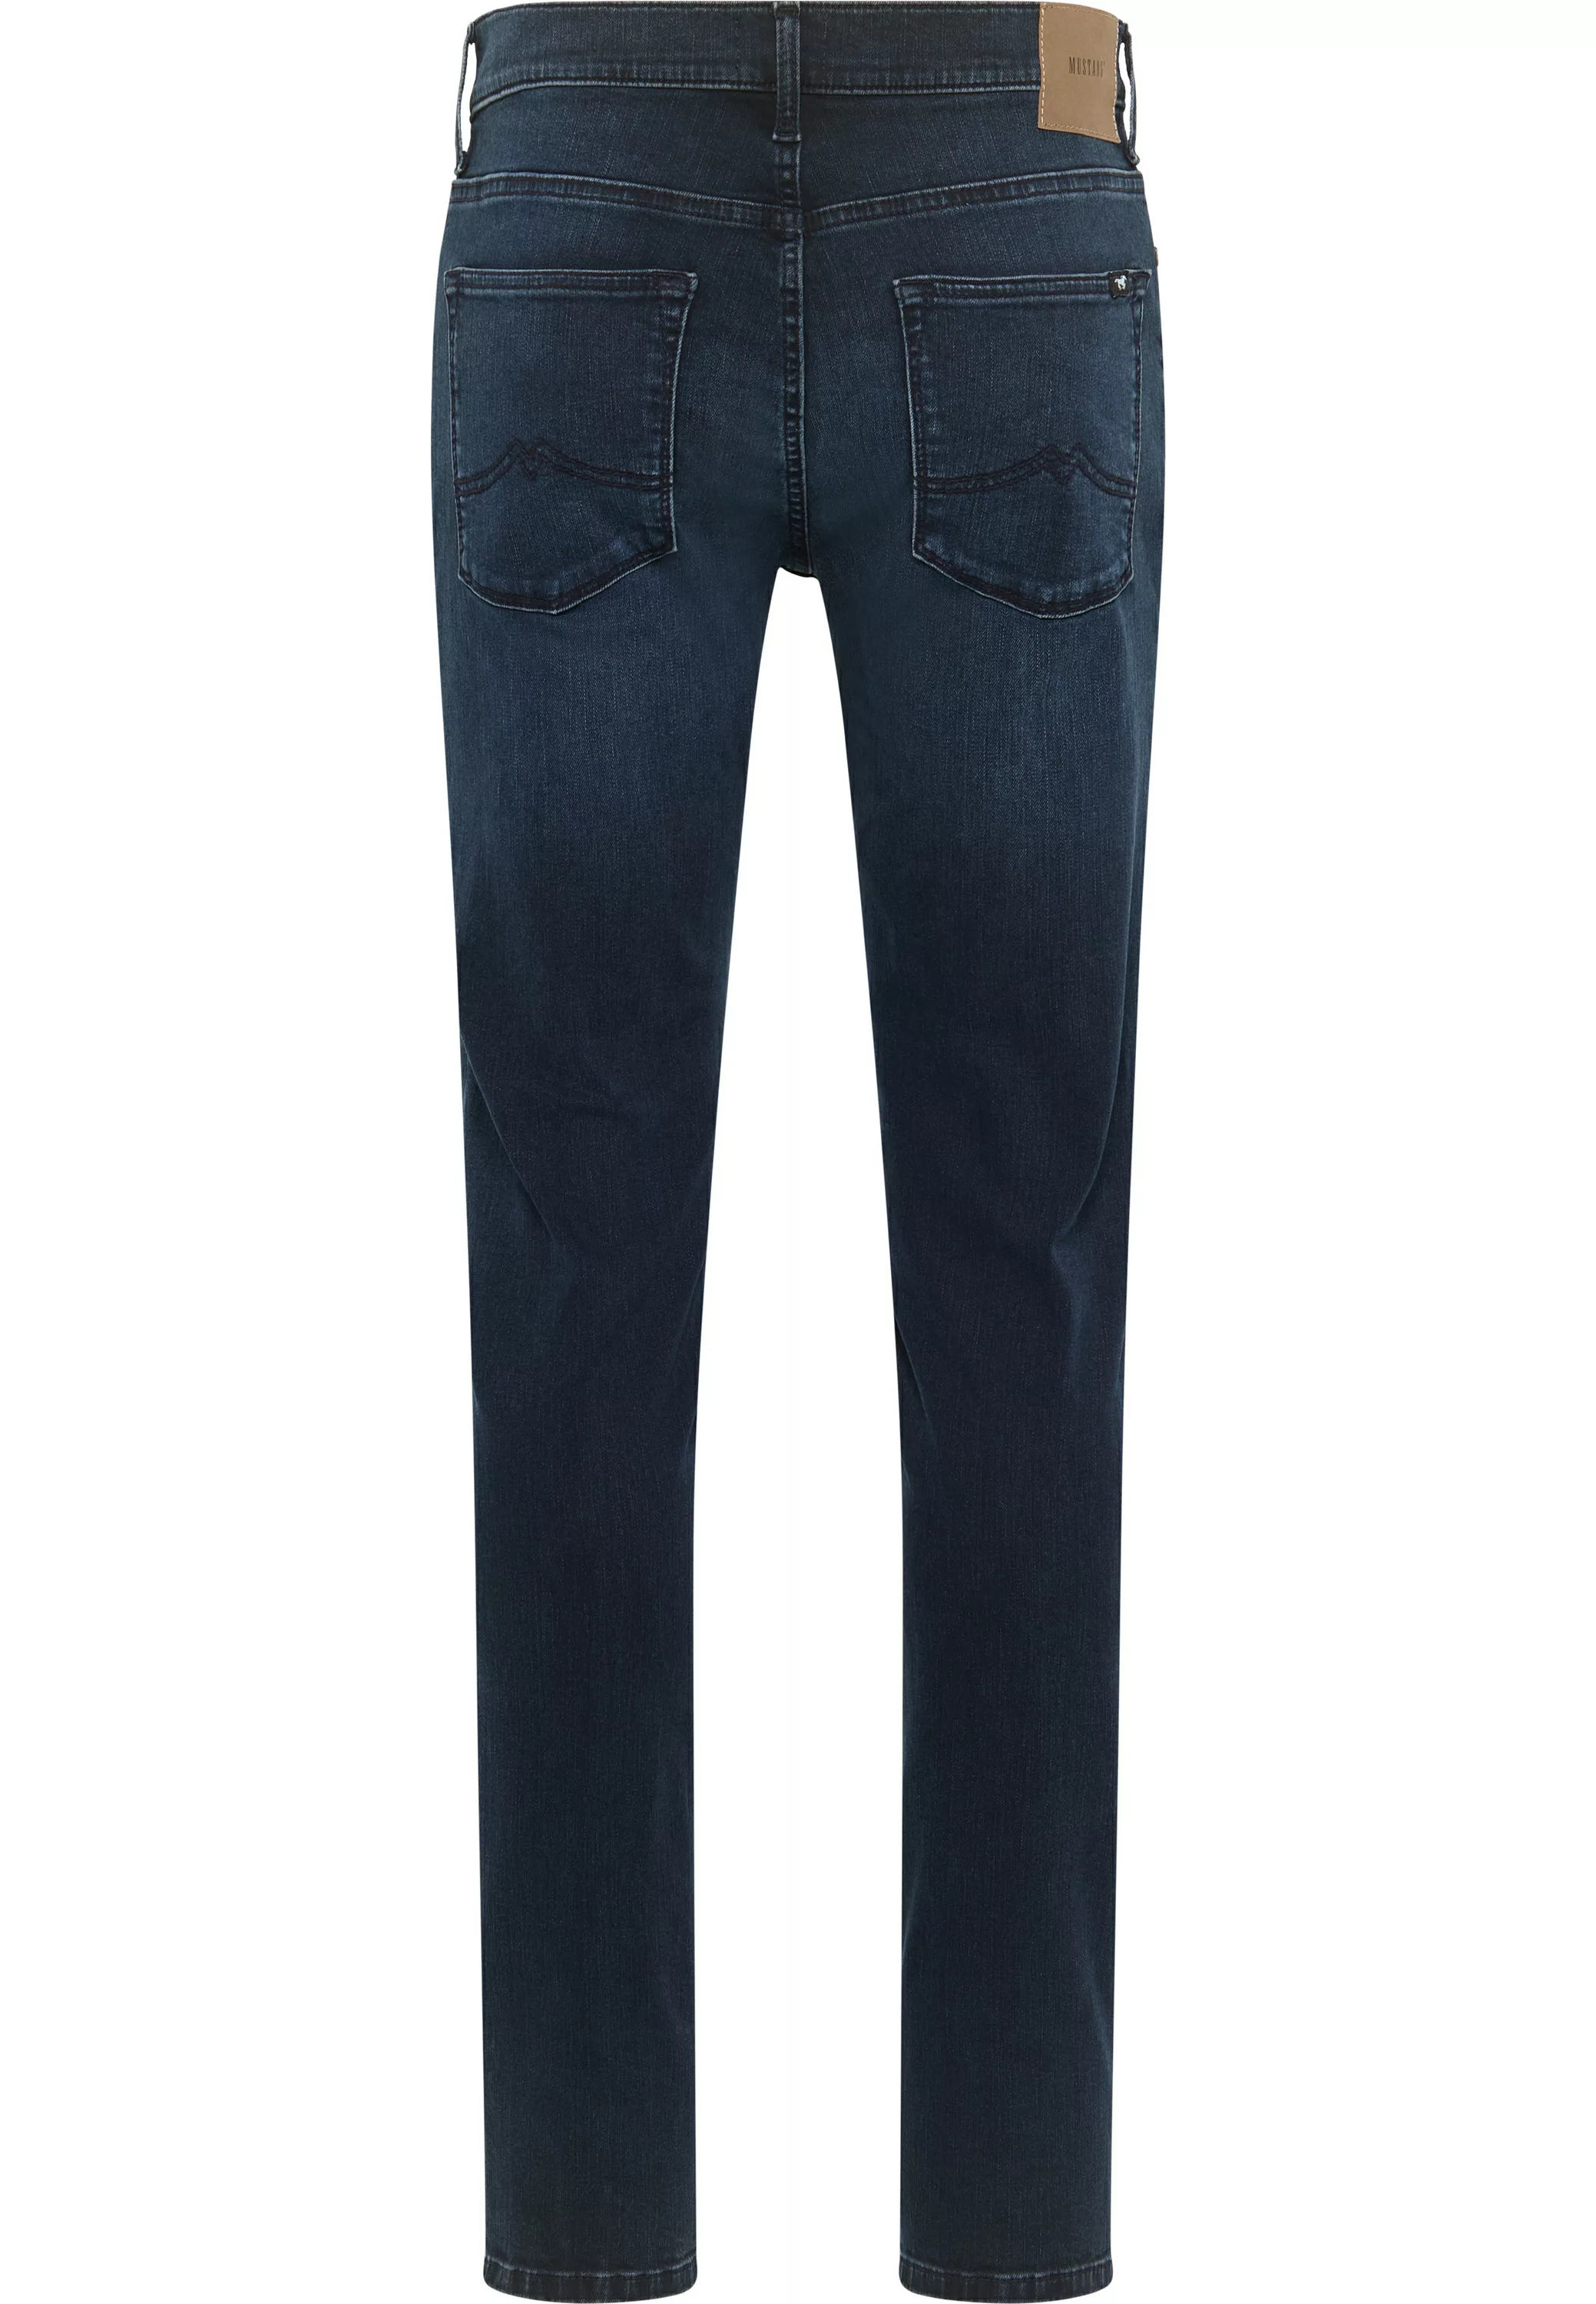 Mustang Herren Jeans FRISCO - Skinny Fit Blau - Dark Blue Denim günstig online kaufen